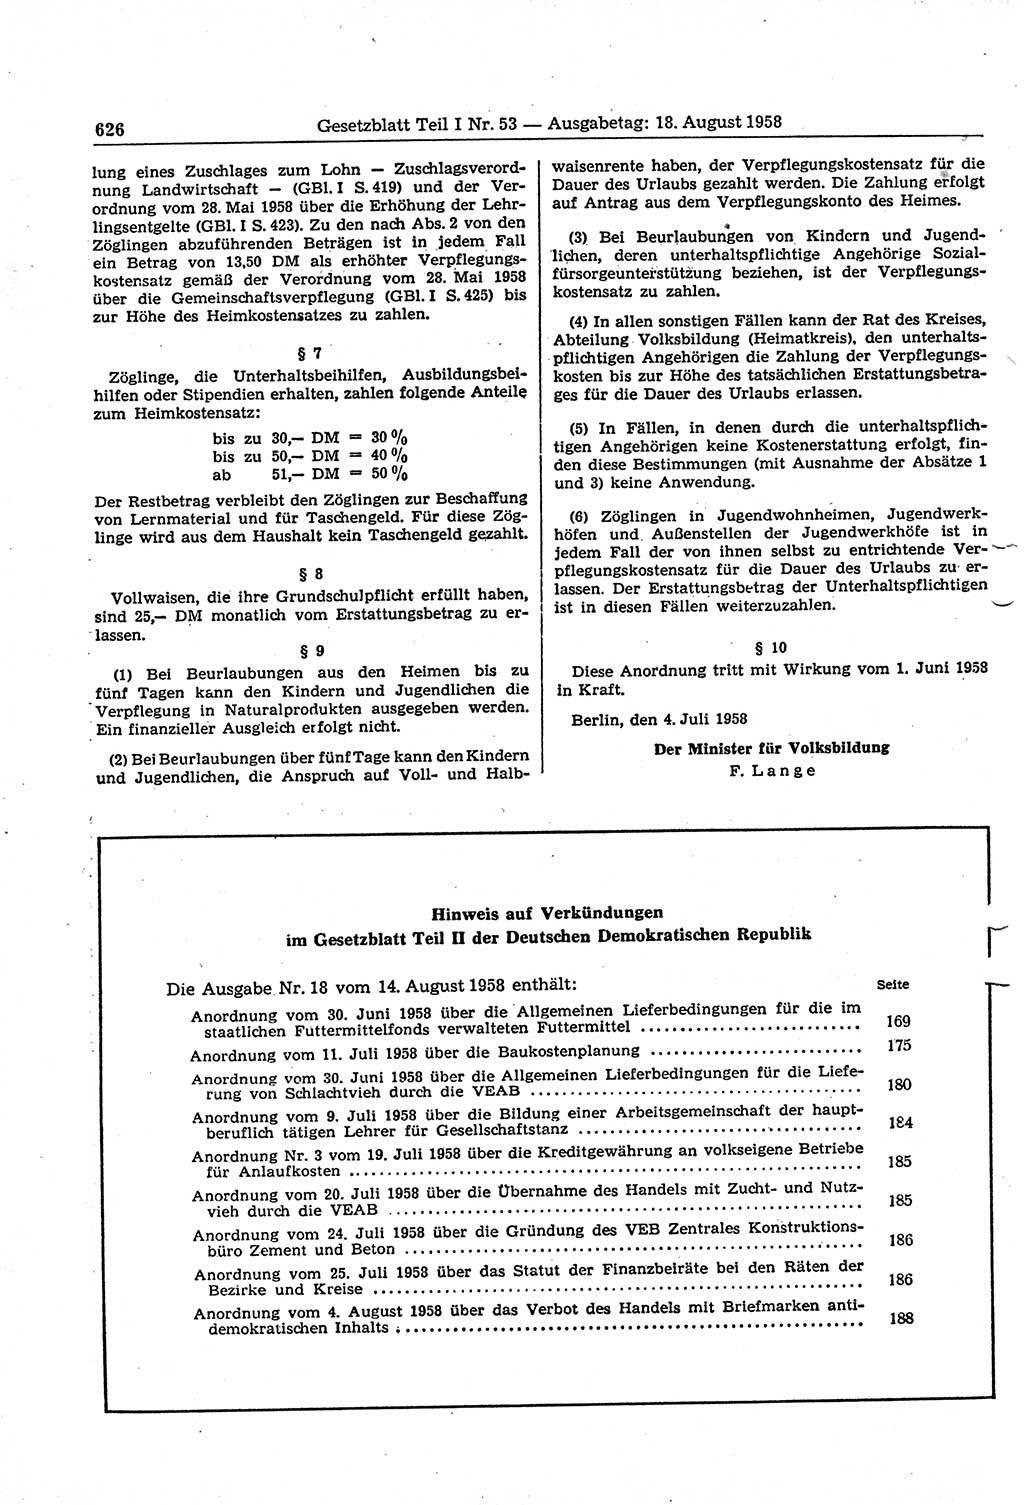 Gesetzblatt (GBl.) der Deutschen Demokratischen Republik (DDR) Teil Ⅰ 1958, Seite 626 (GBl. DDR Ⅰ 1958, S. 626)